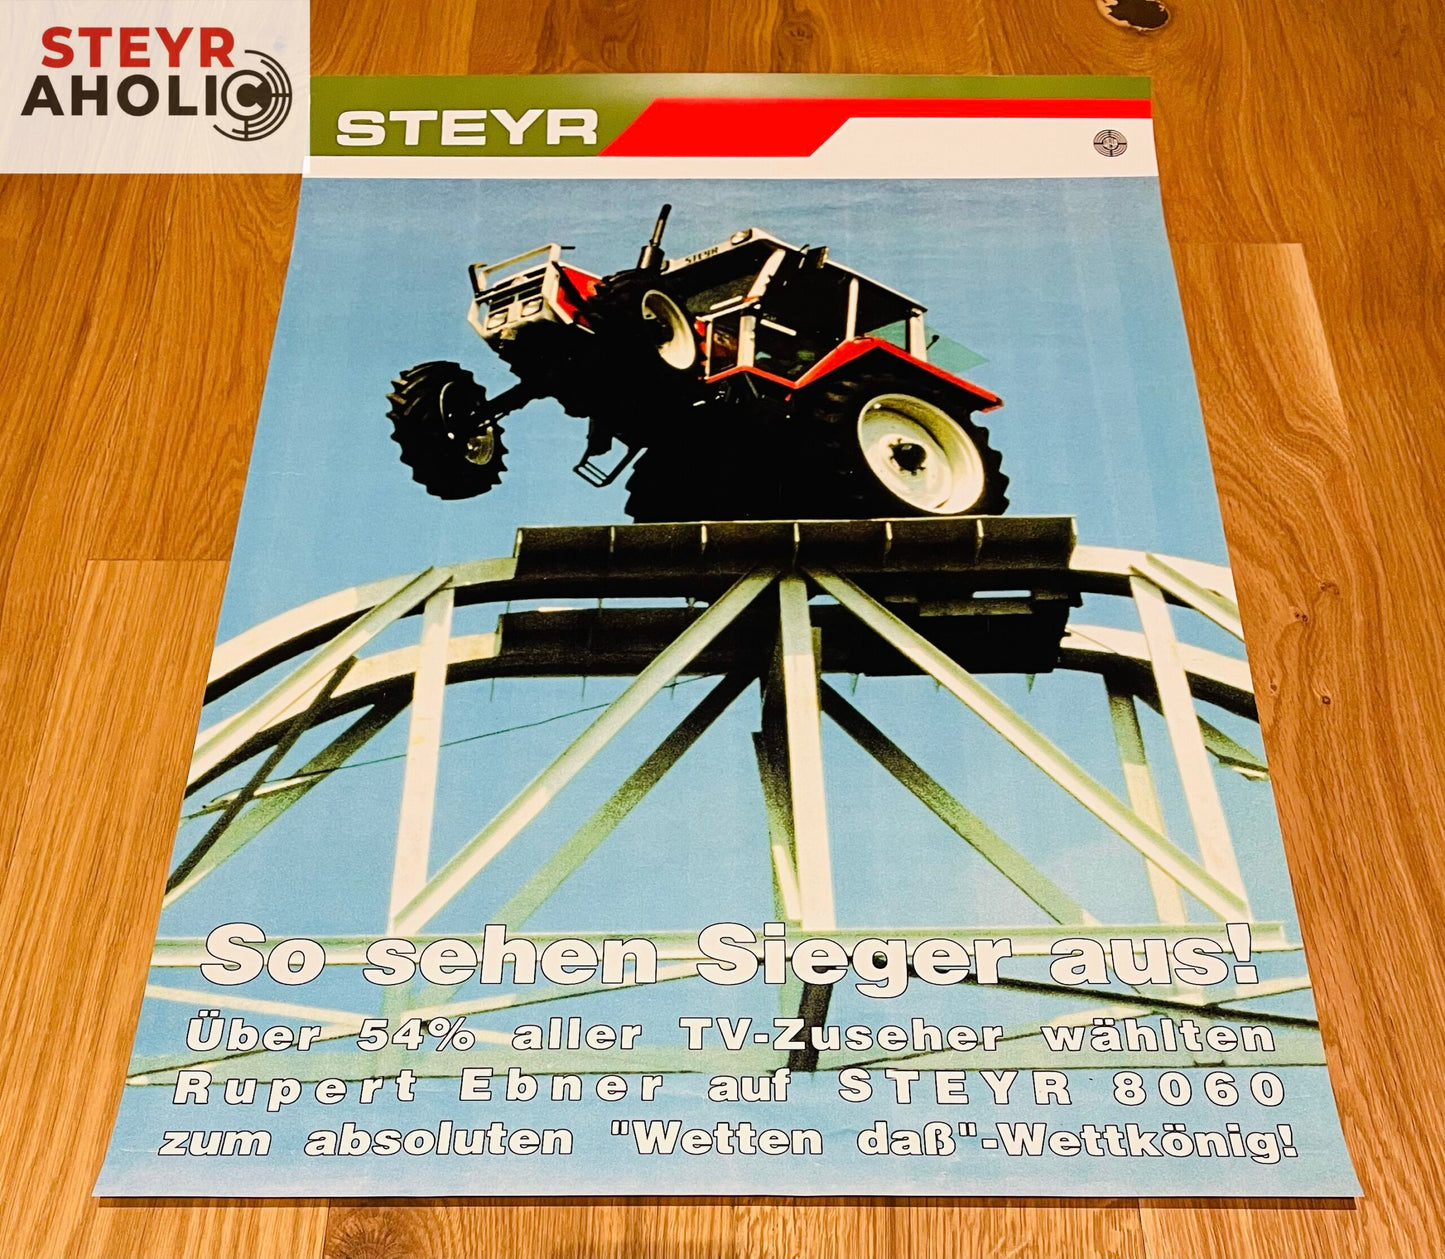 Steyr 8060 "Wetten-daß-Wettkönig" Poster